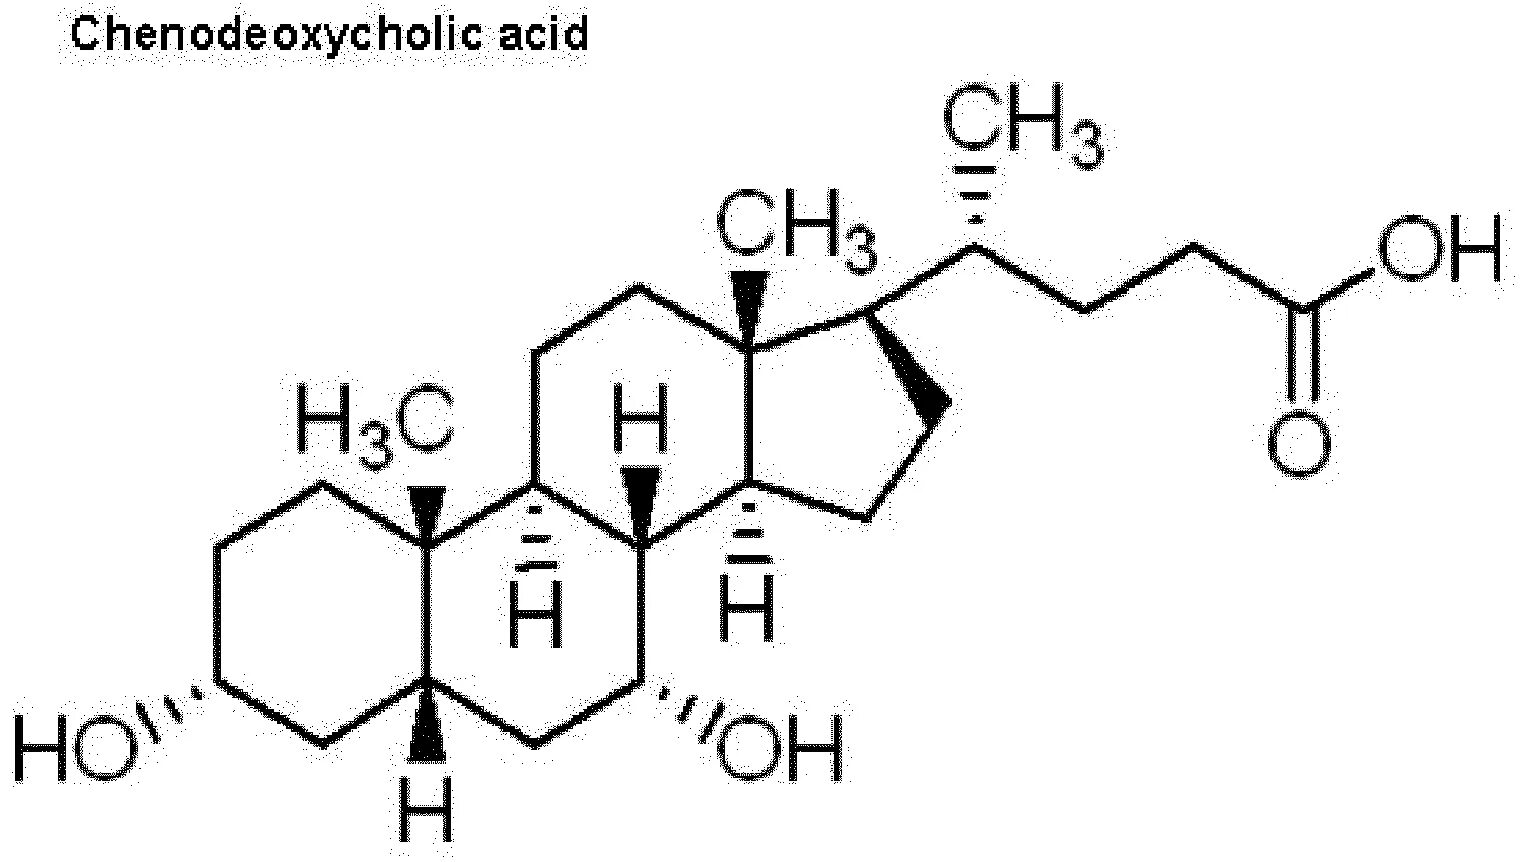 Сигма кислоты. 7 Дегидрохолестерин формула. Эргостерин формула. Хенодезоксихолевая кислота. Циклопропиламин.